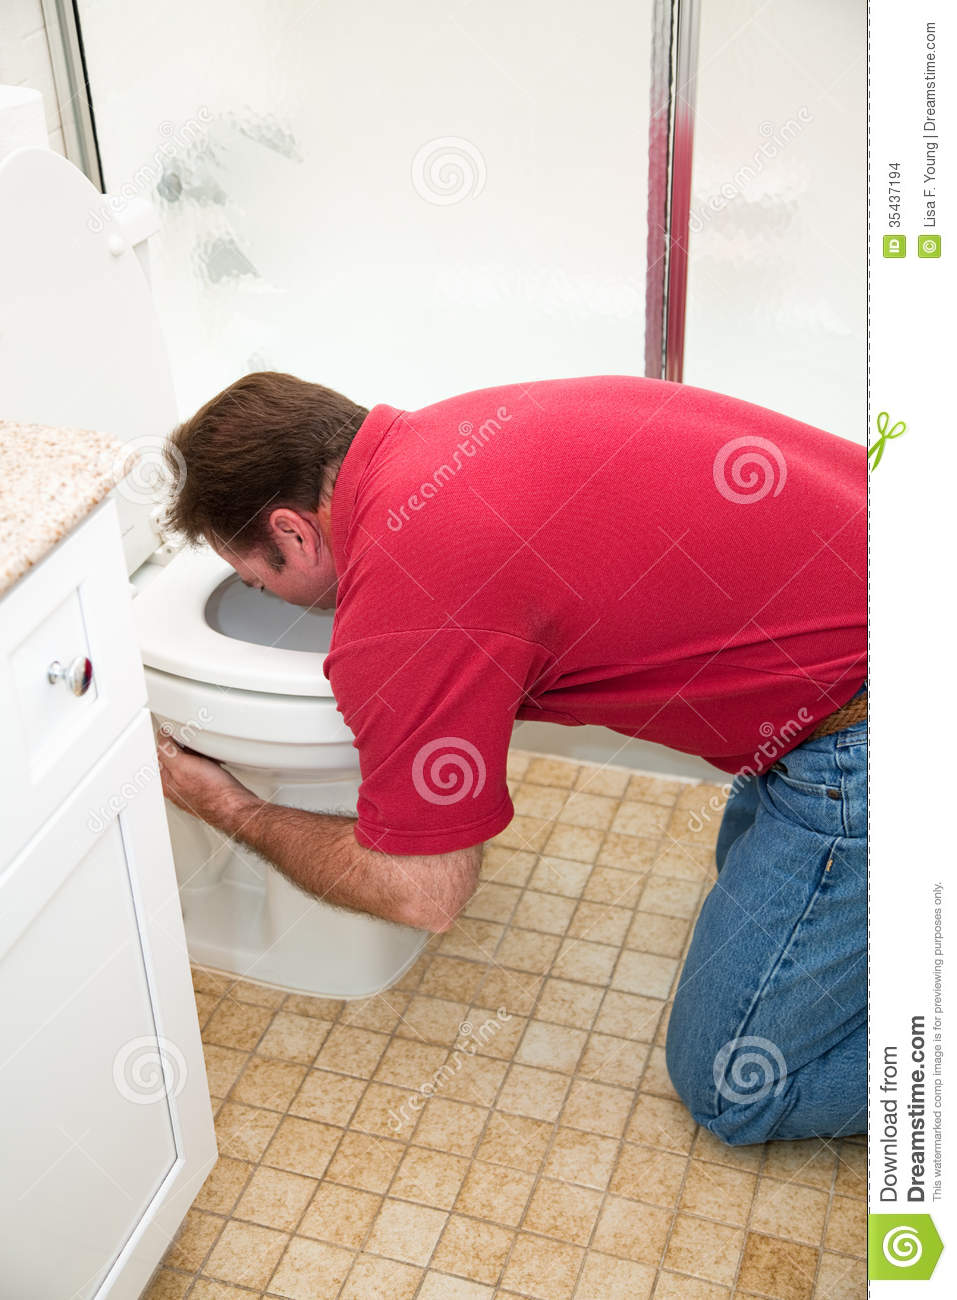 man-vomiting-toilet-kneeling-down-bathroom-35437194.jpg